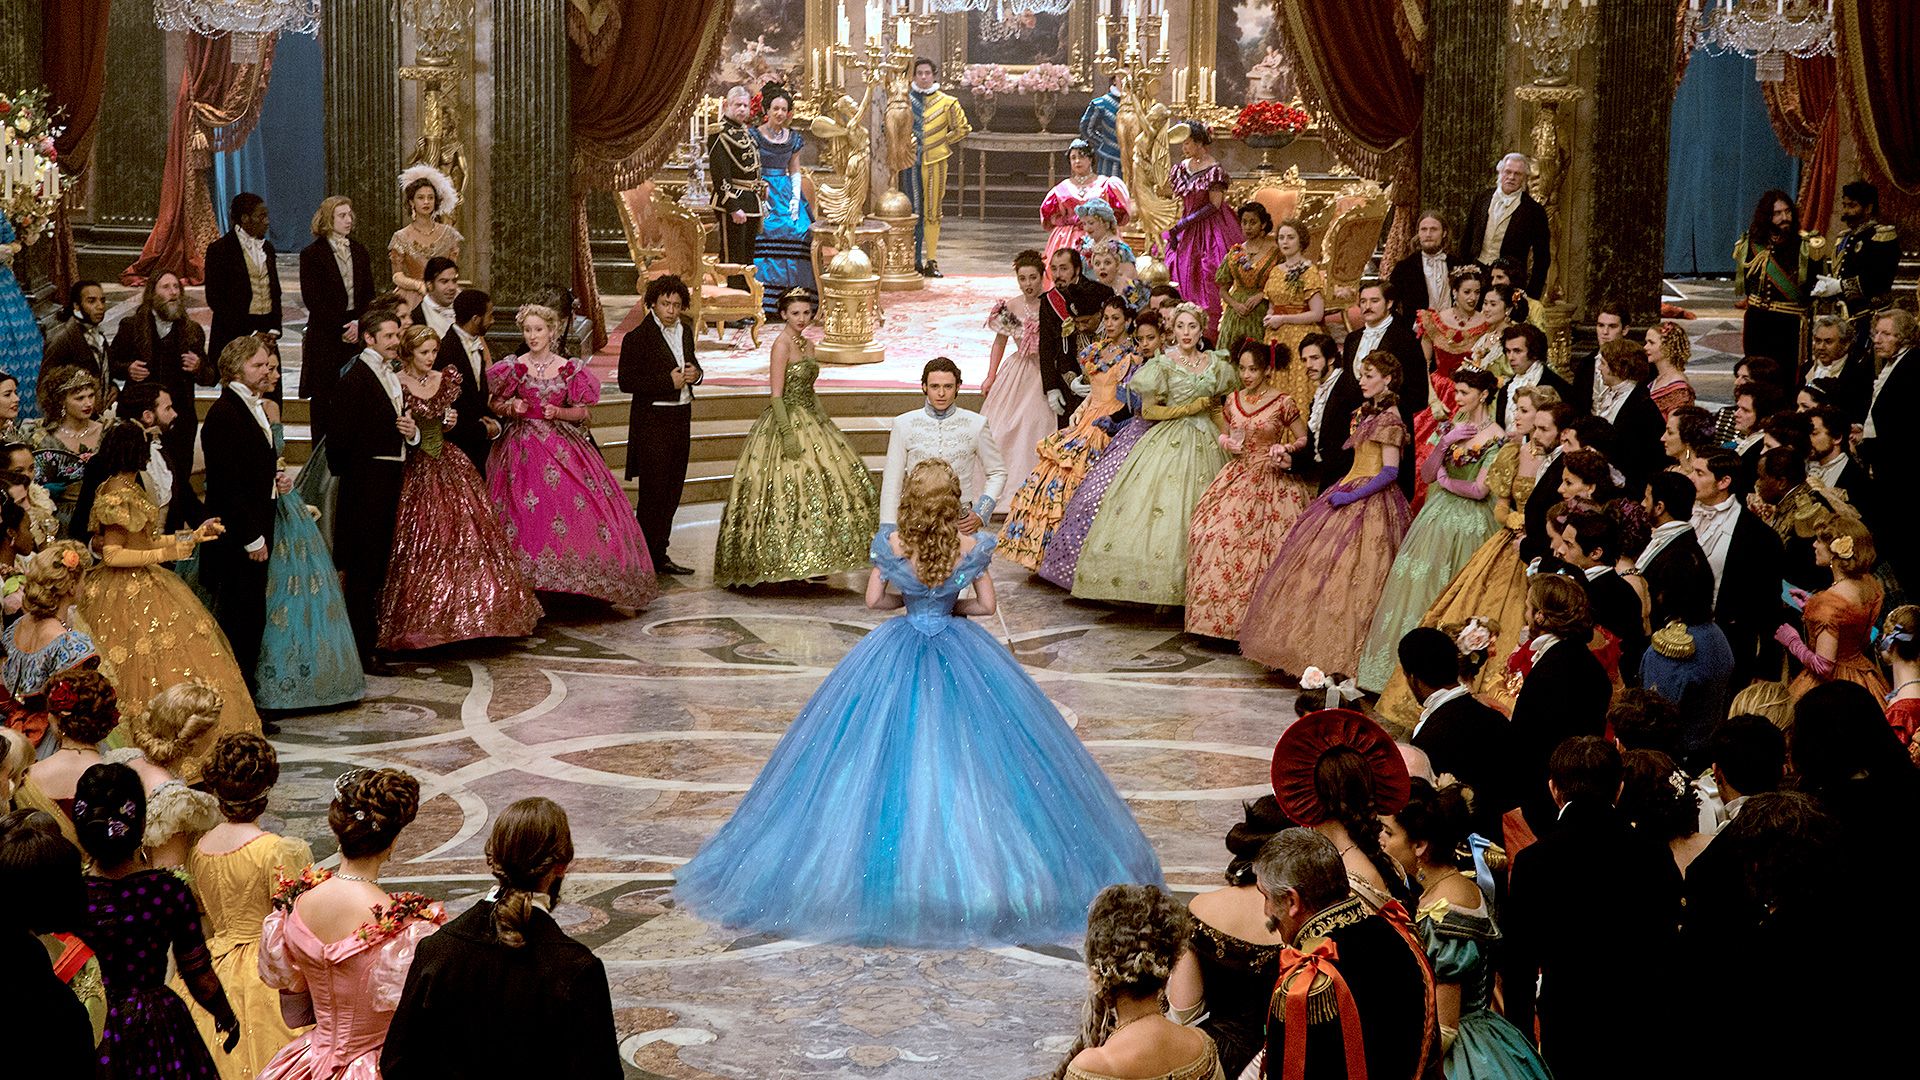 Movie Review: Cinderella 2015